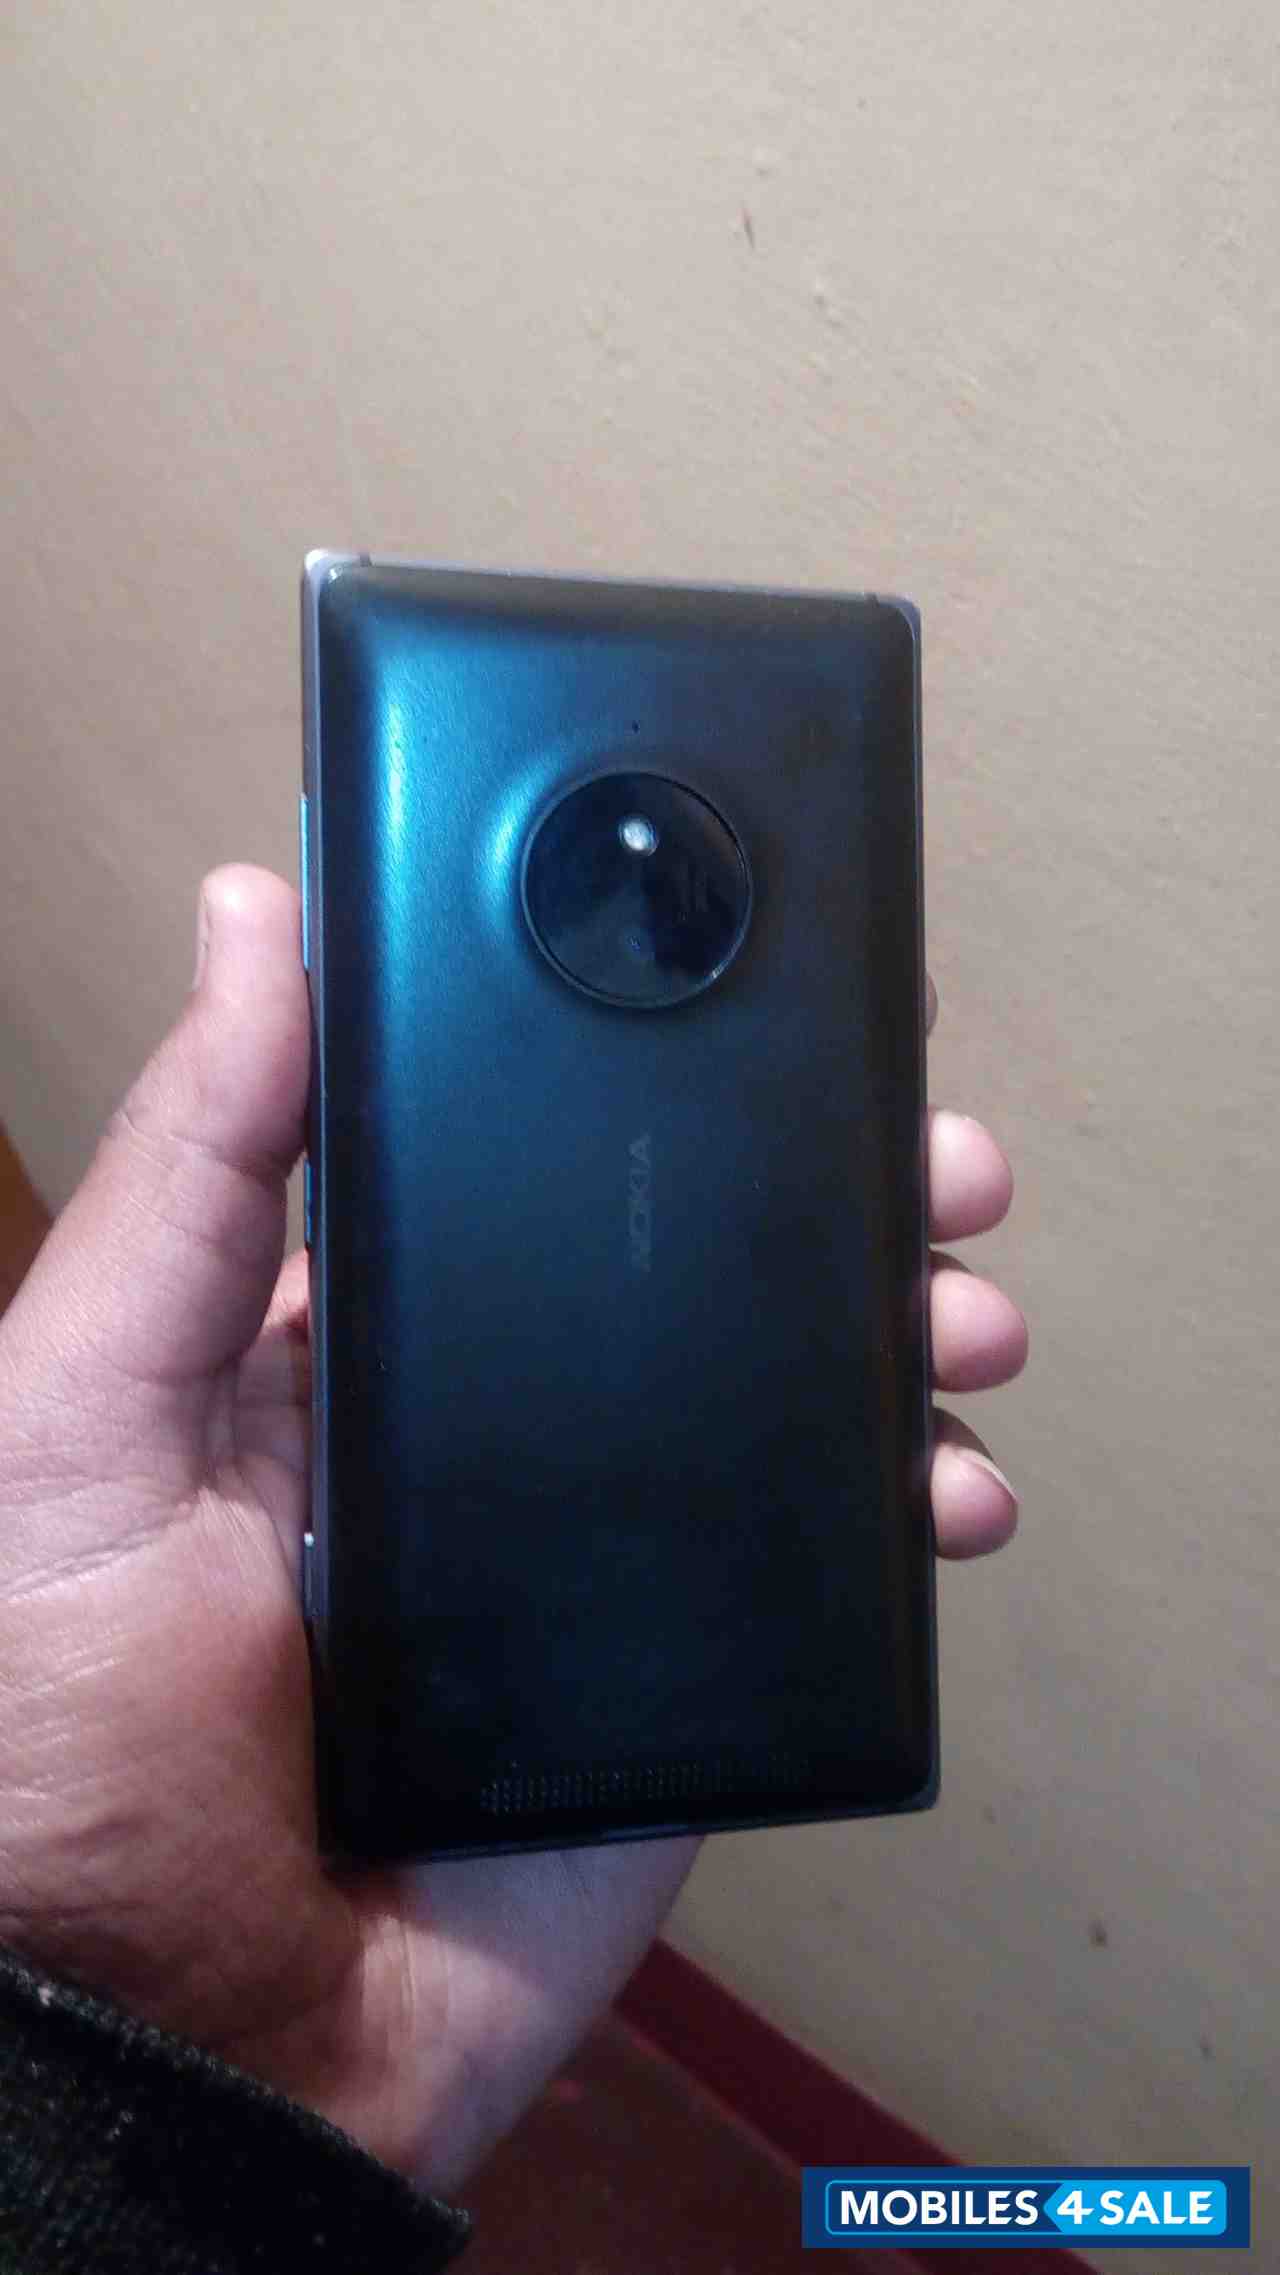 Black Nokia Lumia 830